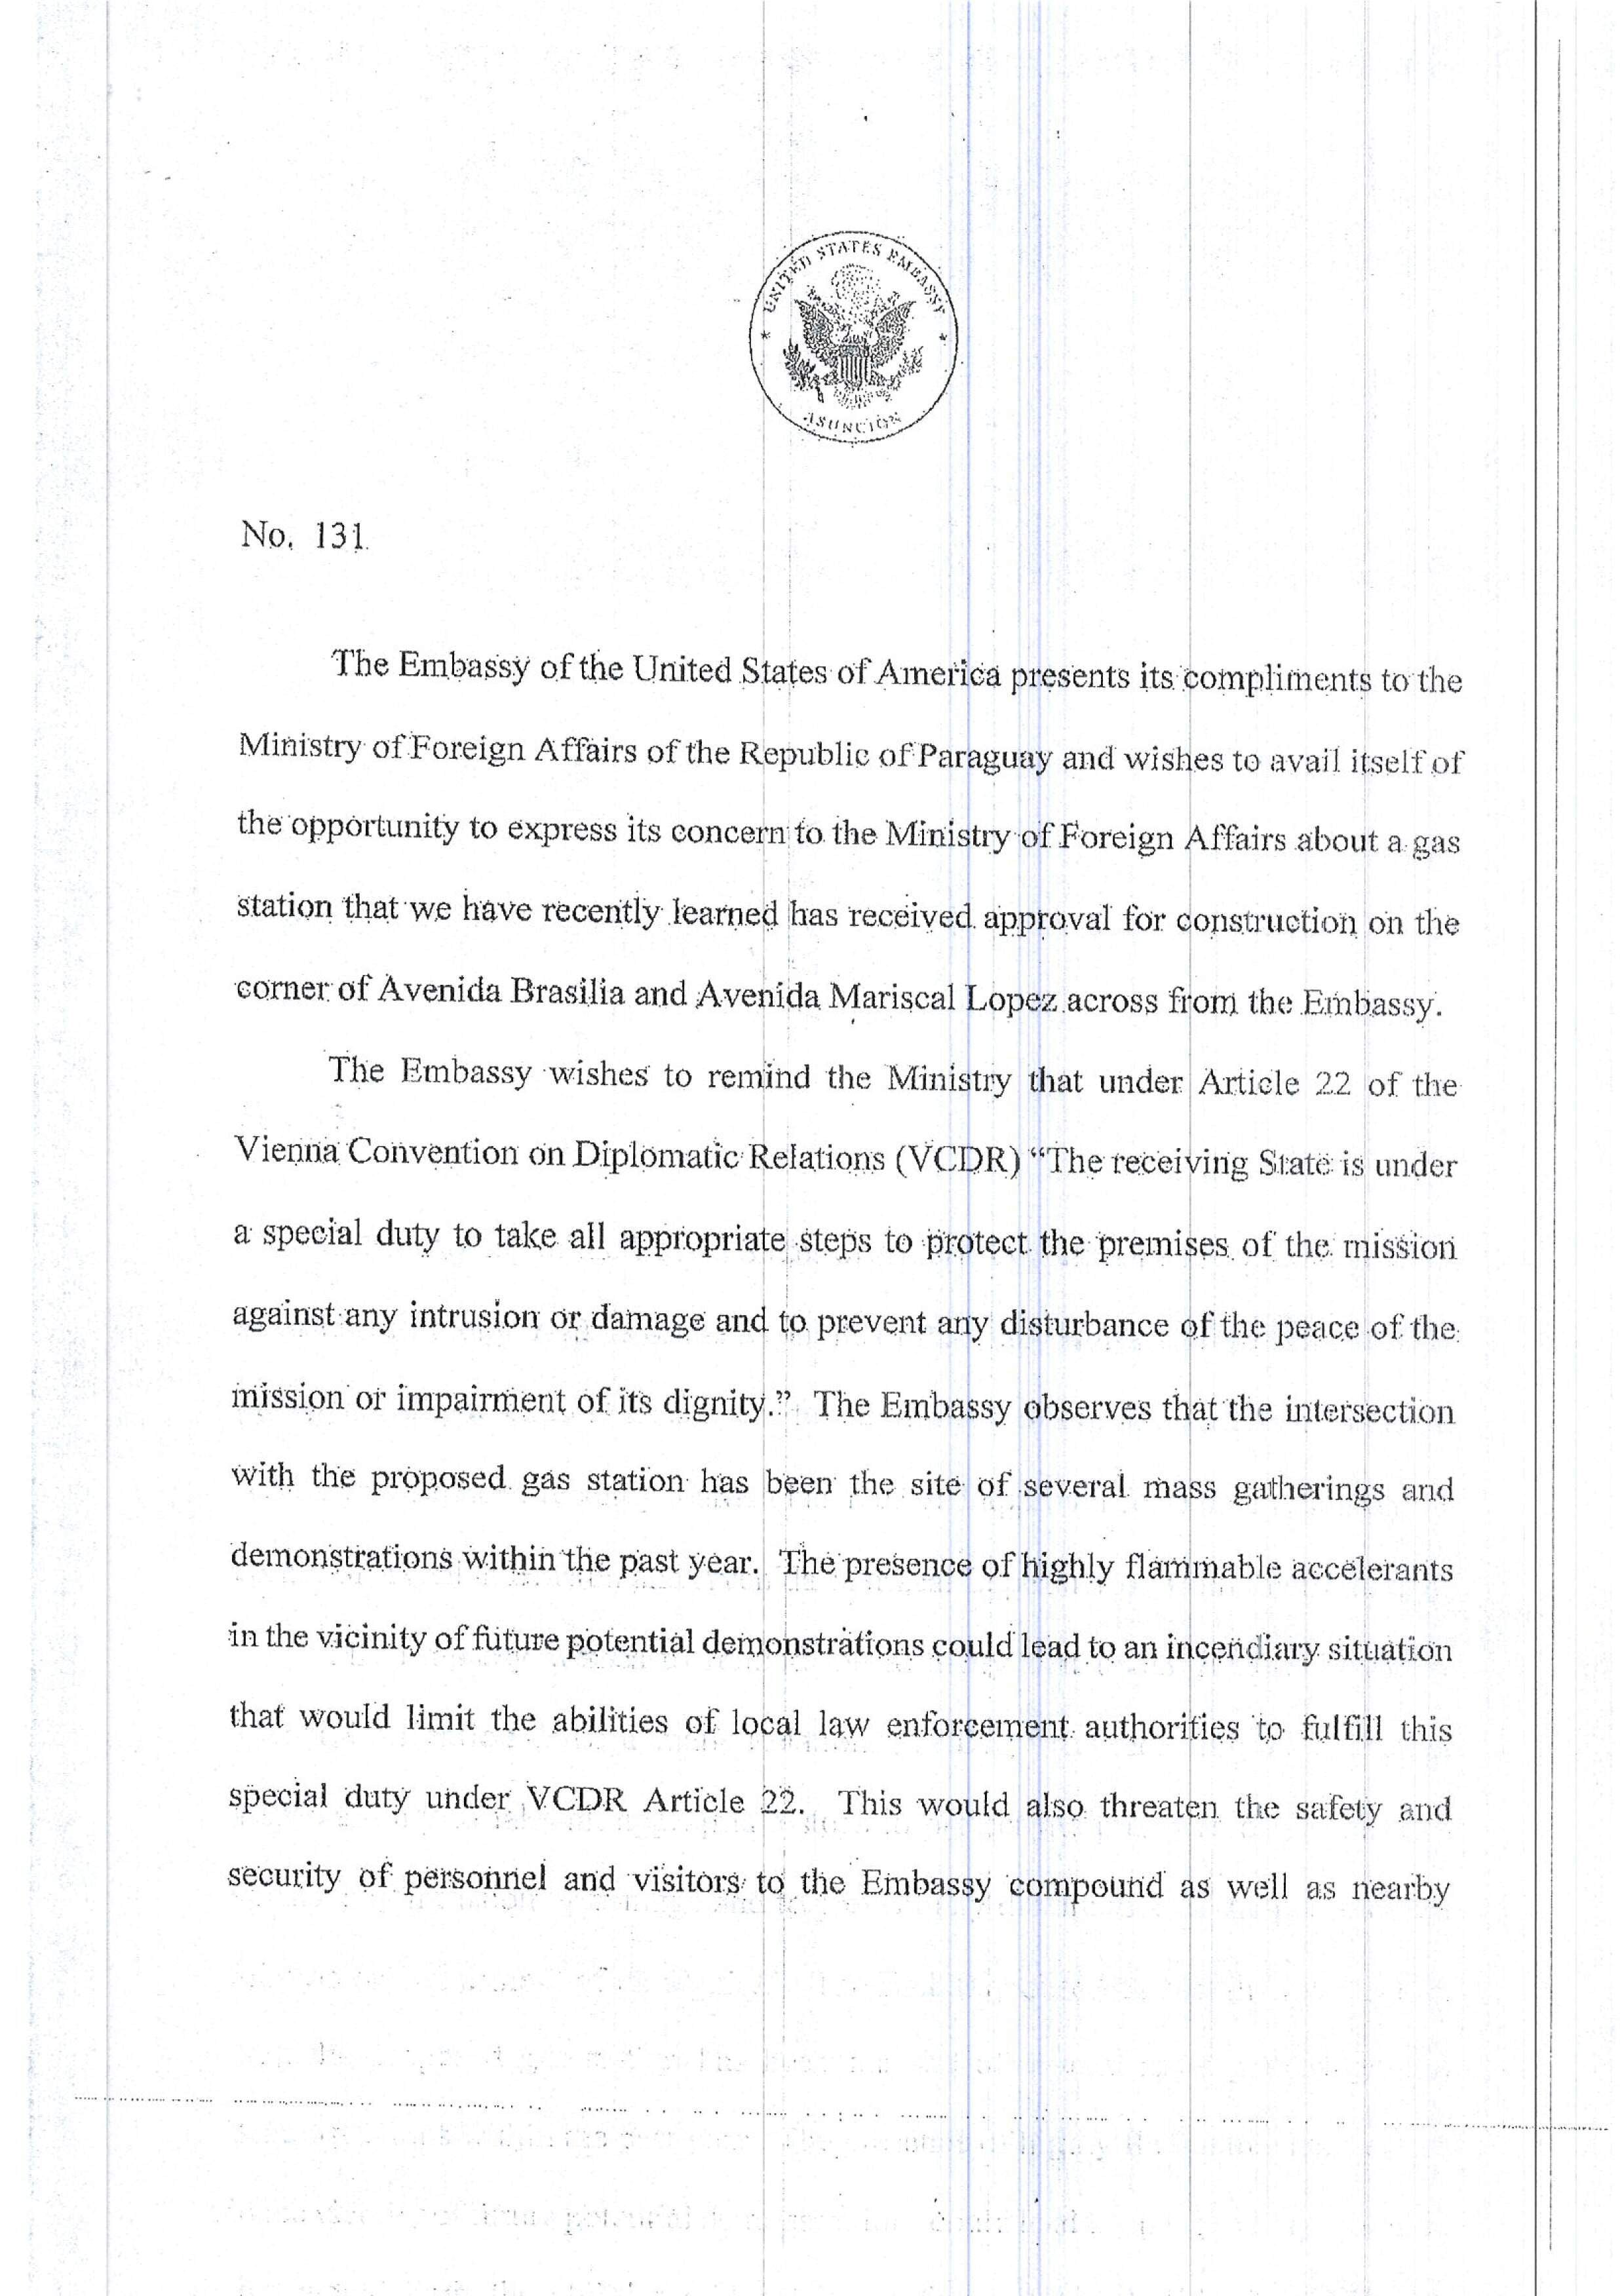 La nota enviada por la embajada de los Estados Unidos sobre la estación de servicios construida frente a su sede.